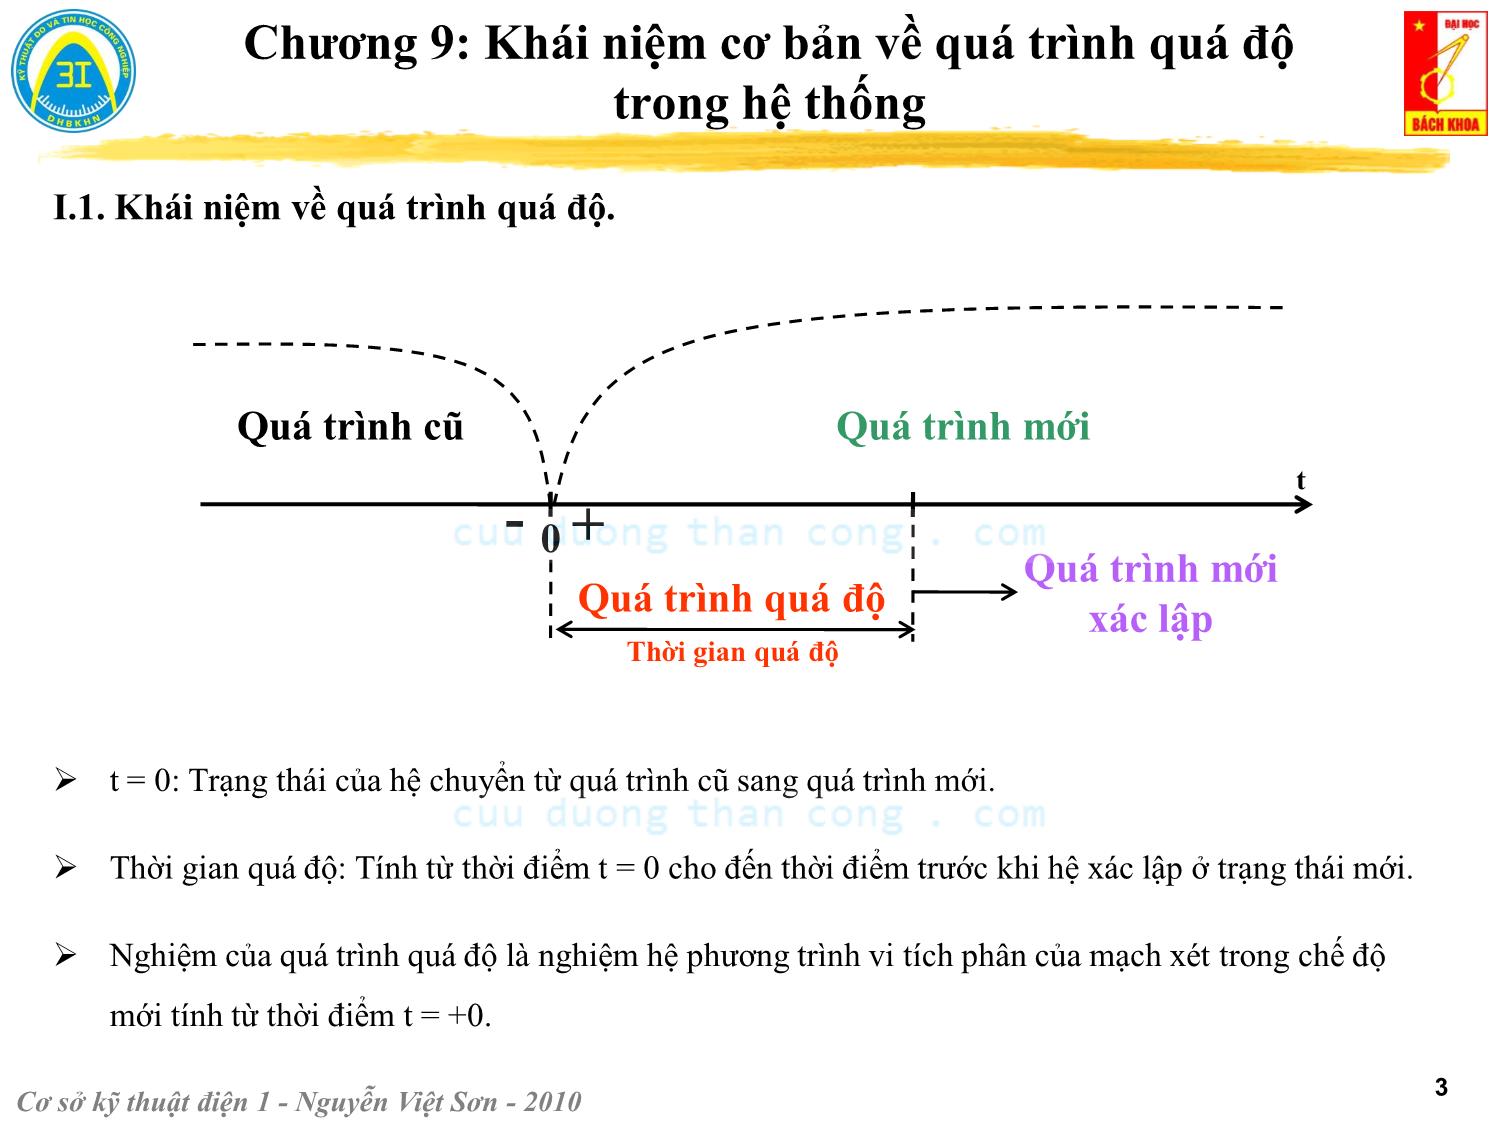 Bài giảng Kỹ thuật điện 1 - Chương 9: Khái niệm cơ bản về quá trình quá độ trong hệ thống - Nguyễn Việt Sơn trang 3